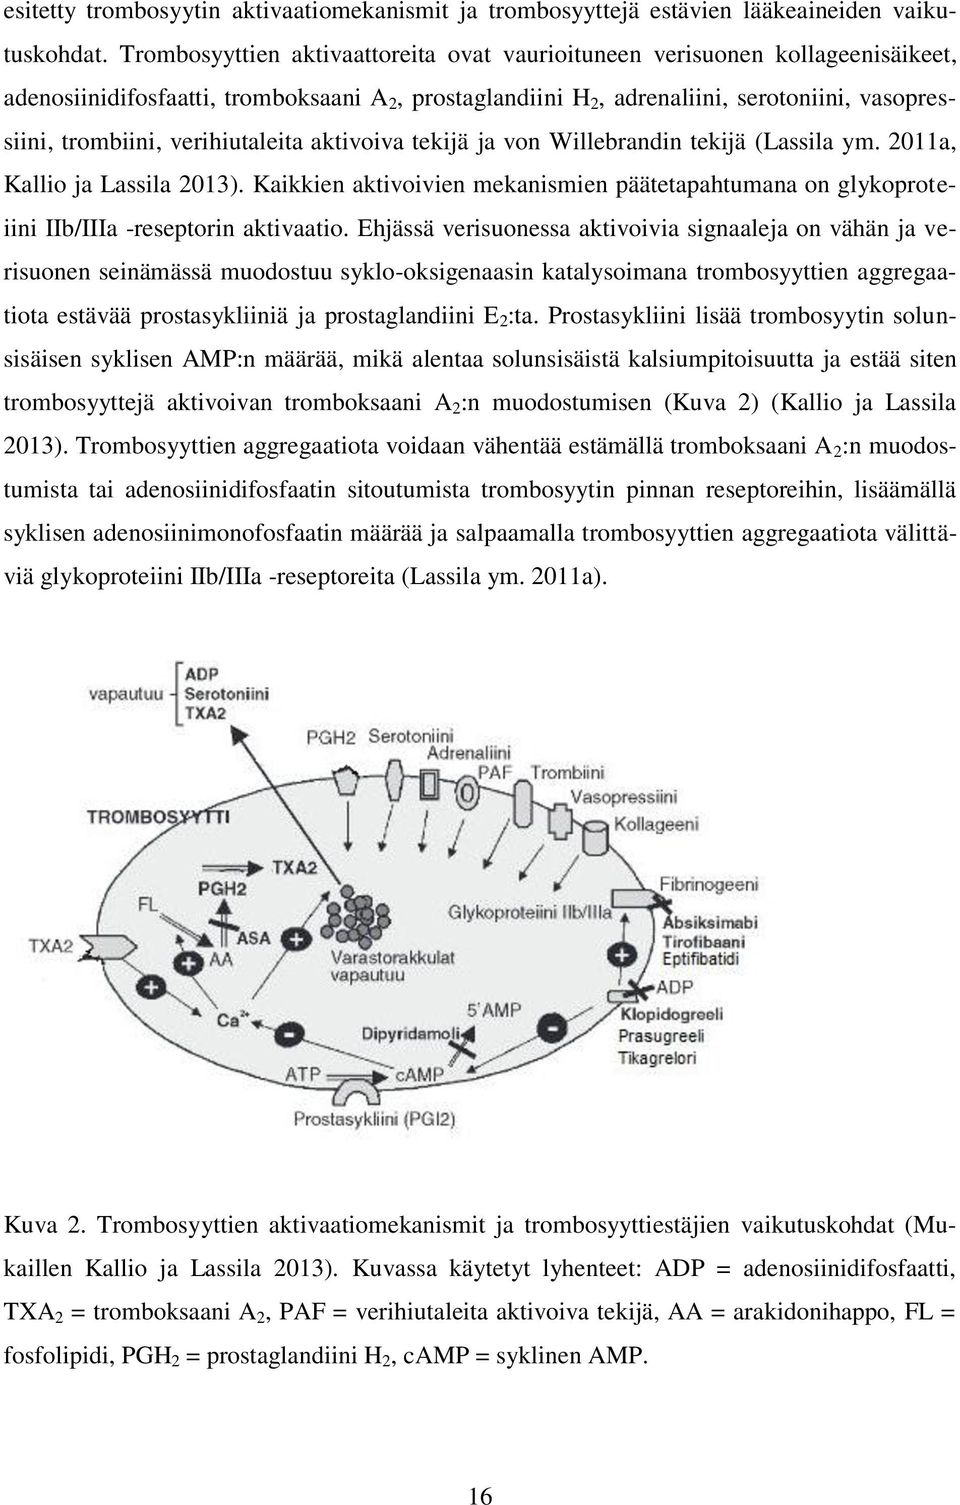 verihiutaleita aktivoiva tekijä ja von Willebrandin tekijä (Lassila ym. 2011a, Kallio ja Lassila 2013).